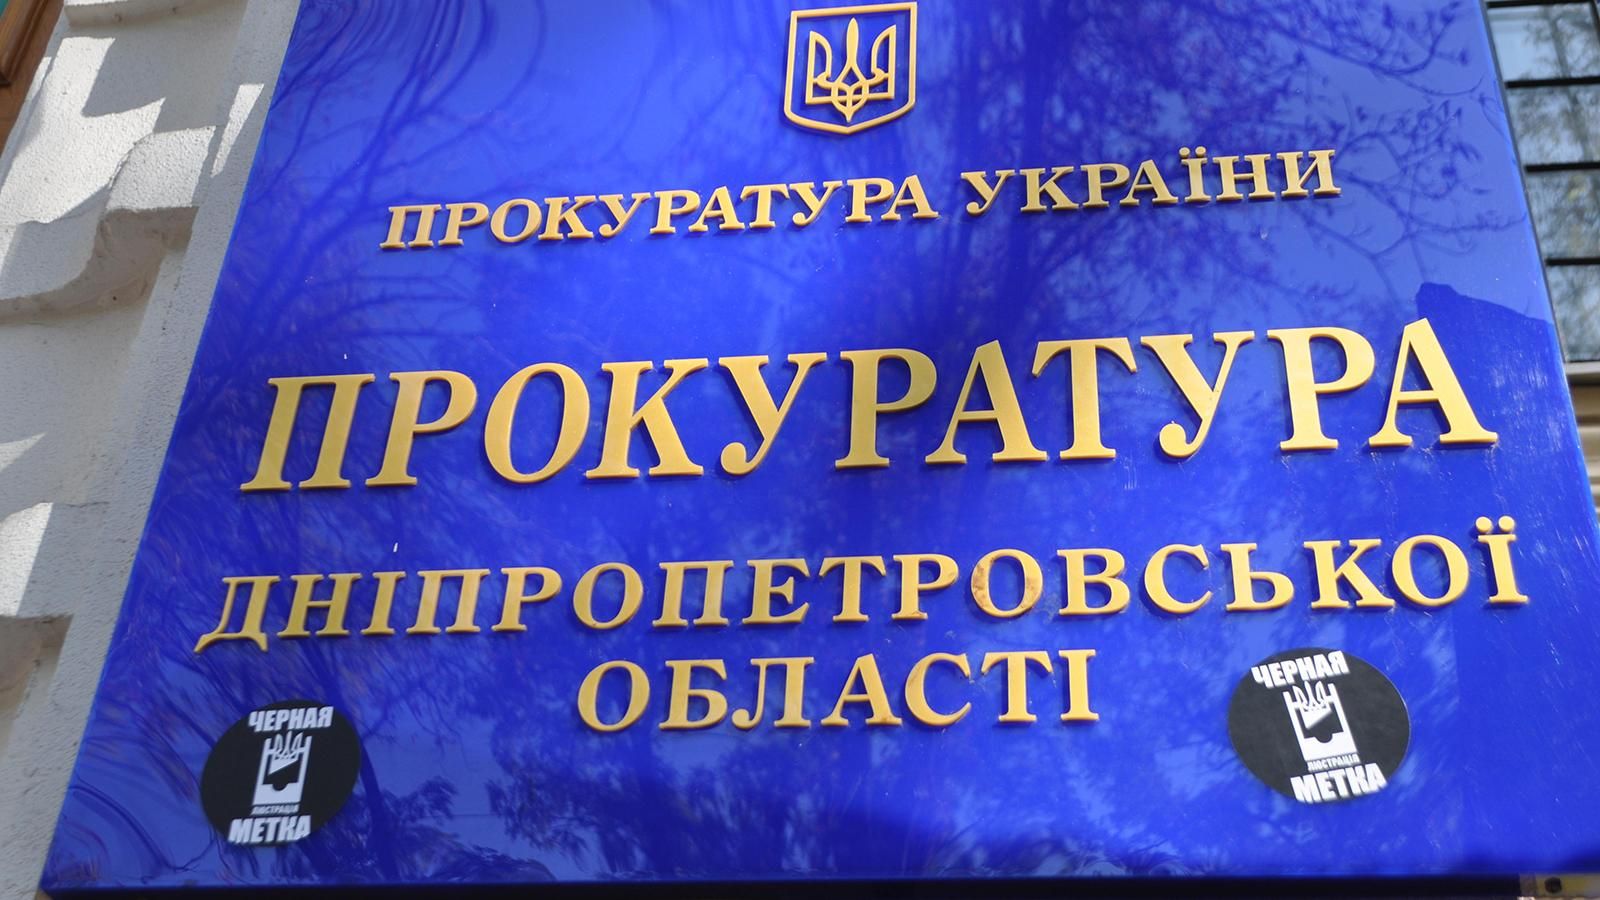 Днепропетровская прокуратура грубо нарушает закон, проявляя интерес к долгам АТБ, — адвокат